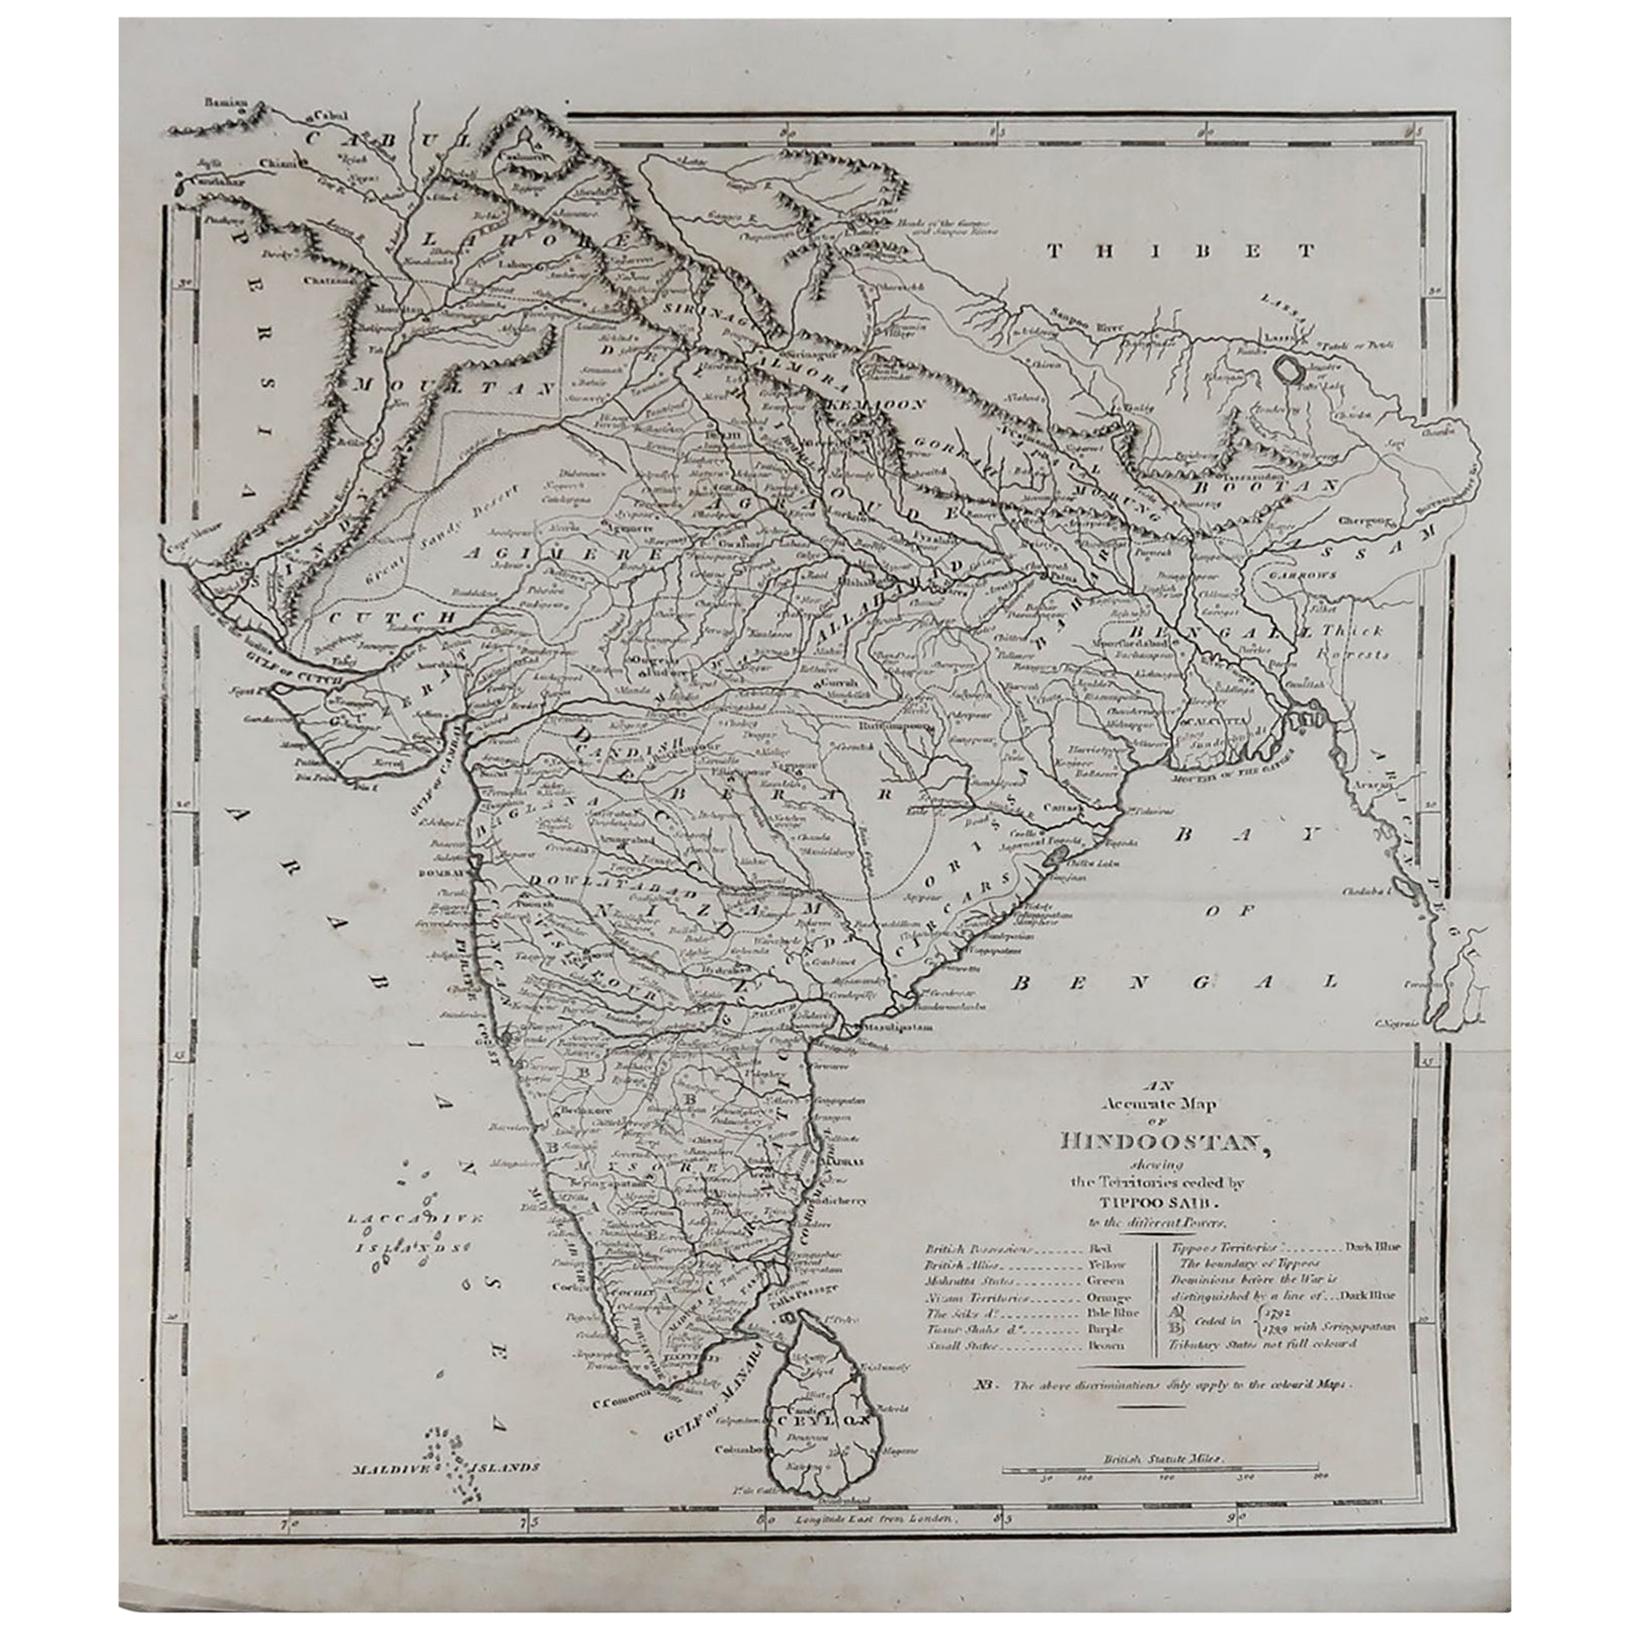 Original Antique Map of India, circa 1820